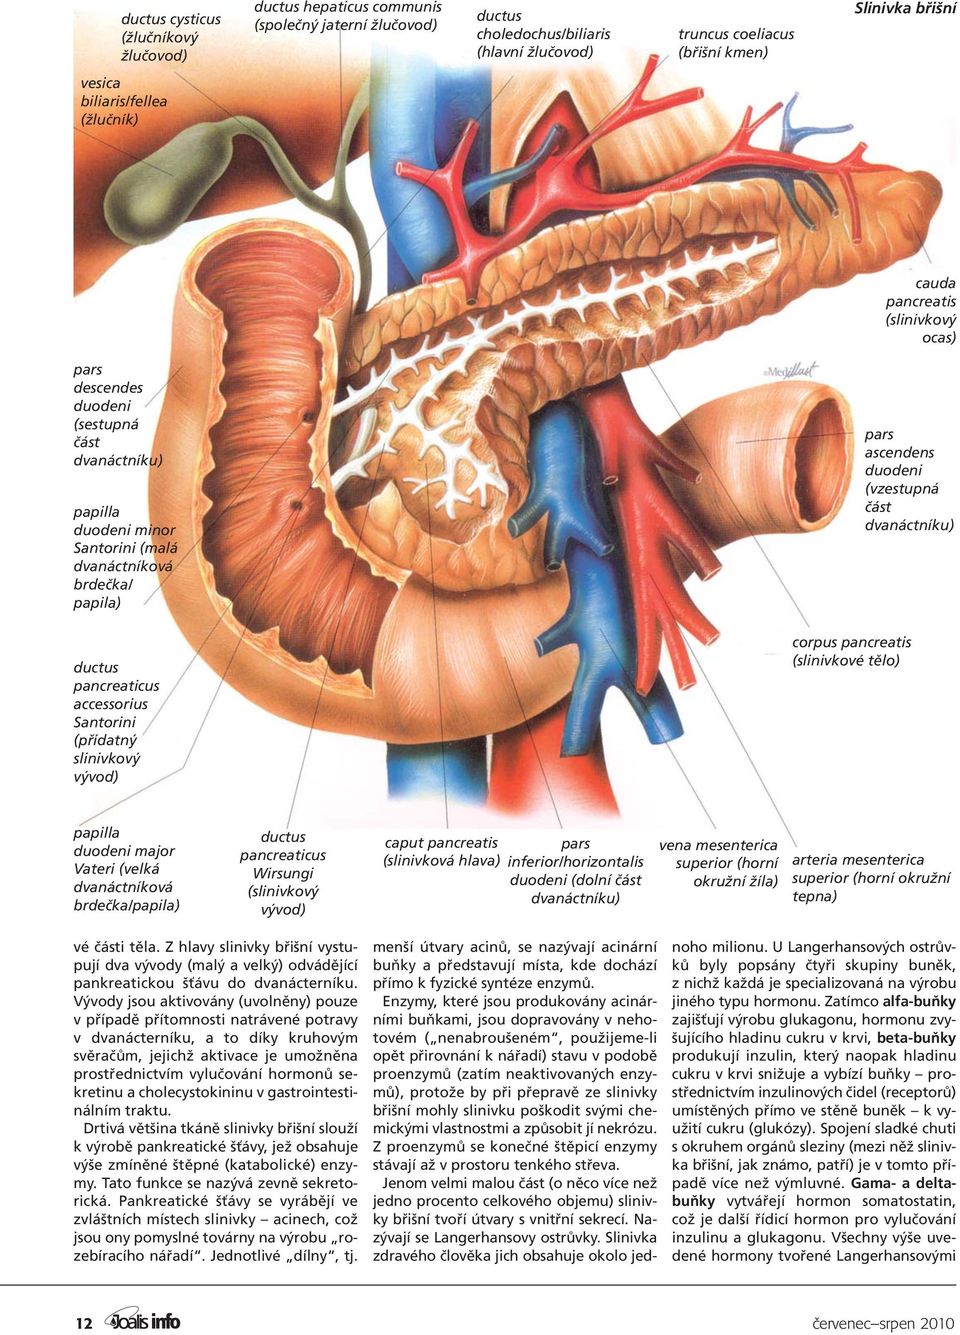 duodeni (vzestupná část dvanáctníku) ductus pancreaticus accessorius Santorini (přídatný slinivkový vývod) corpus pancreatis (slinivkové tělo) papilla duodeni major Vateri (velká dvanáctníková